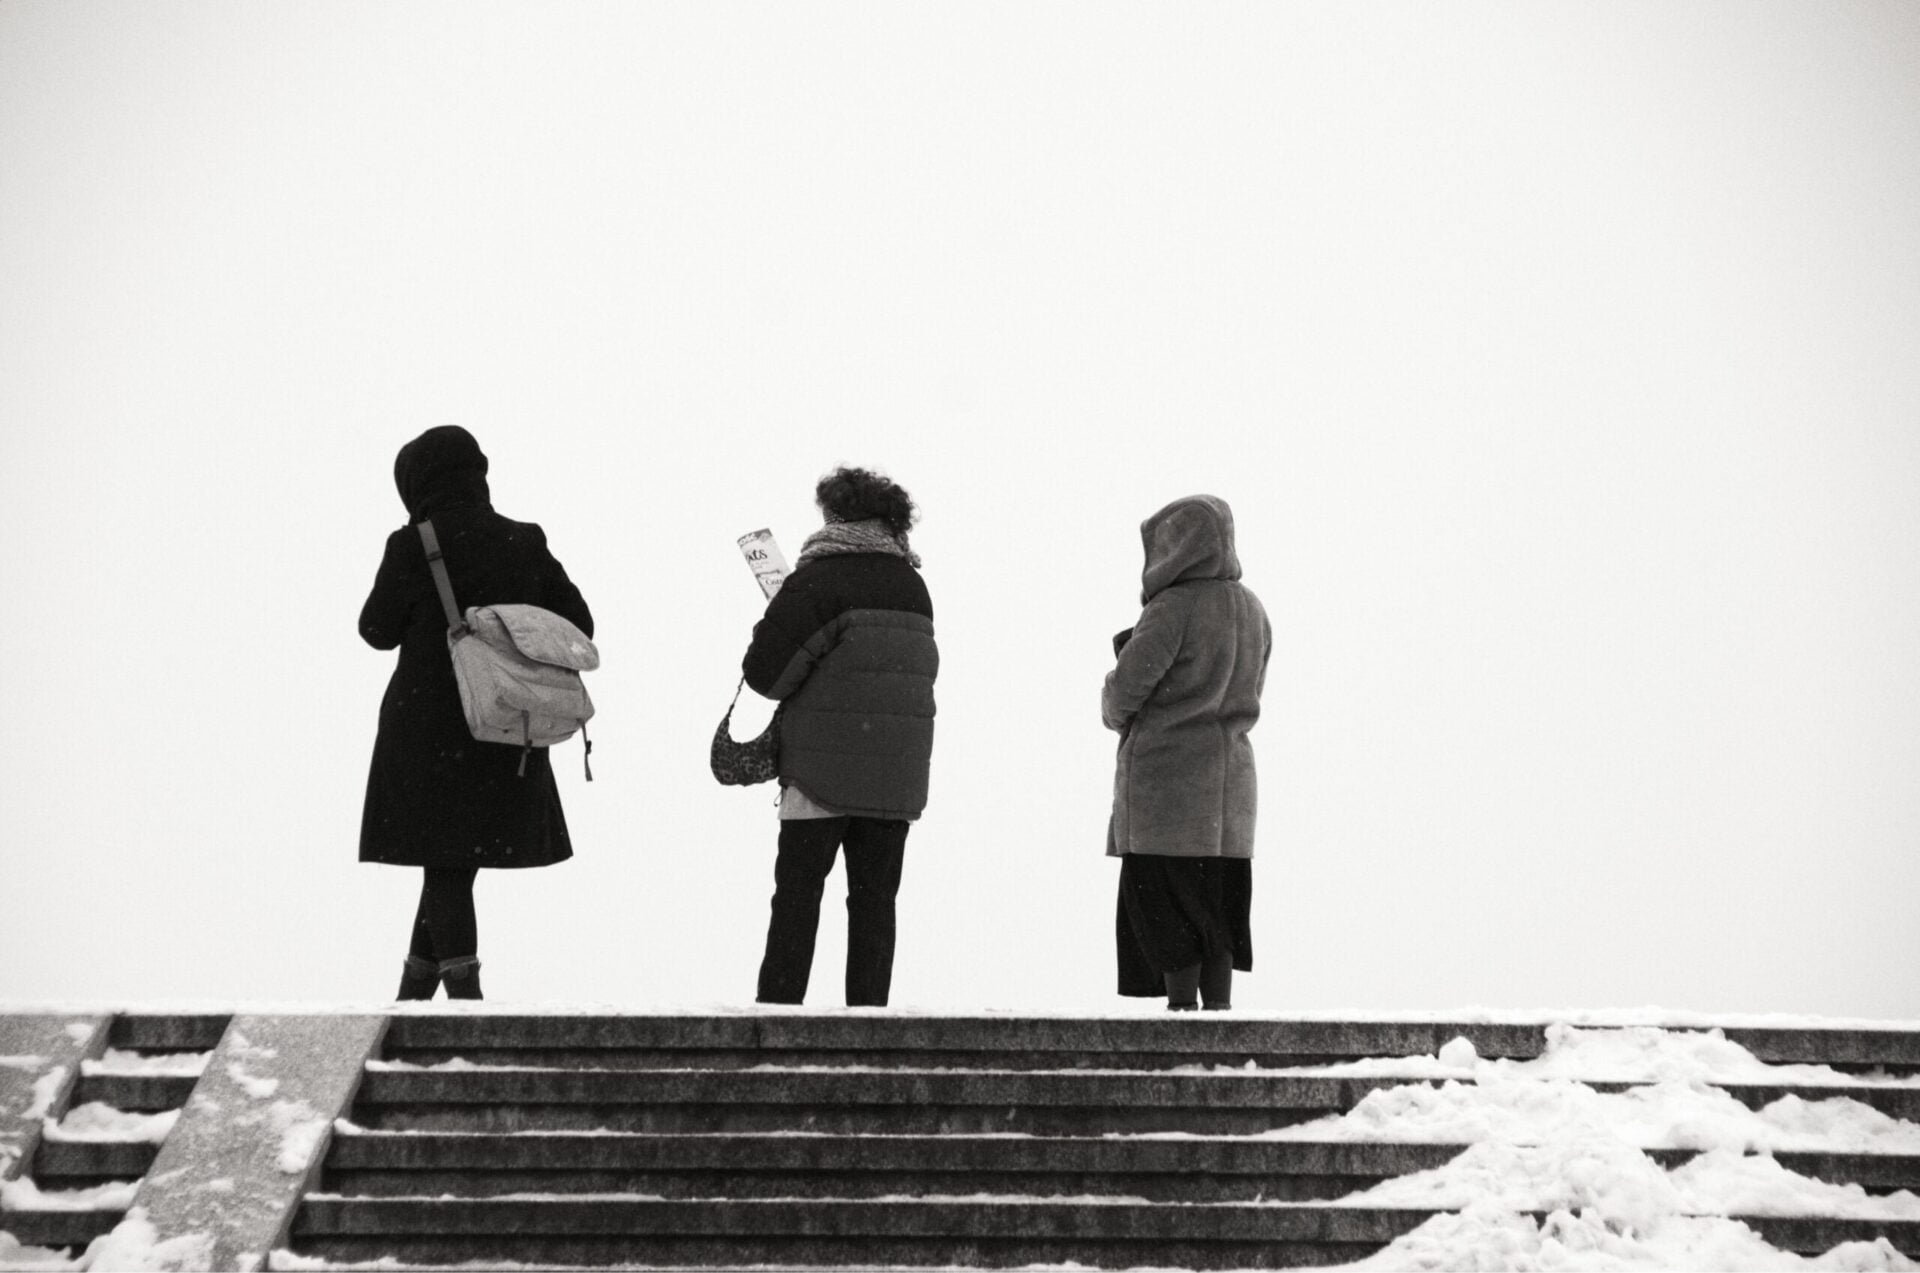 Zdjęcie czarno białe. Jest zima, śnieg, Na szczycie schodów stoją trzy osoby odwrócone tyłem do fotografii.